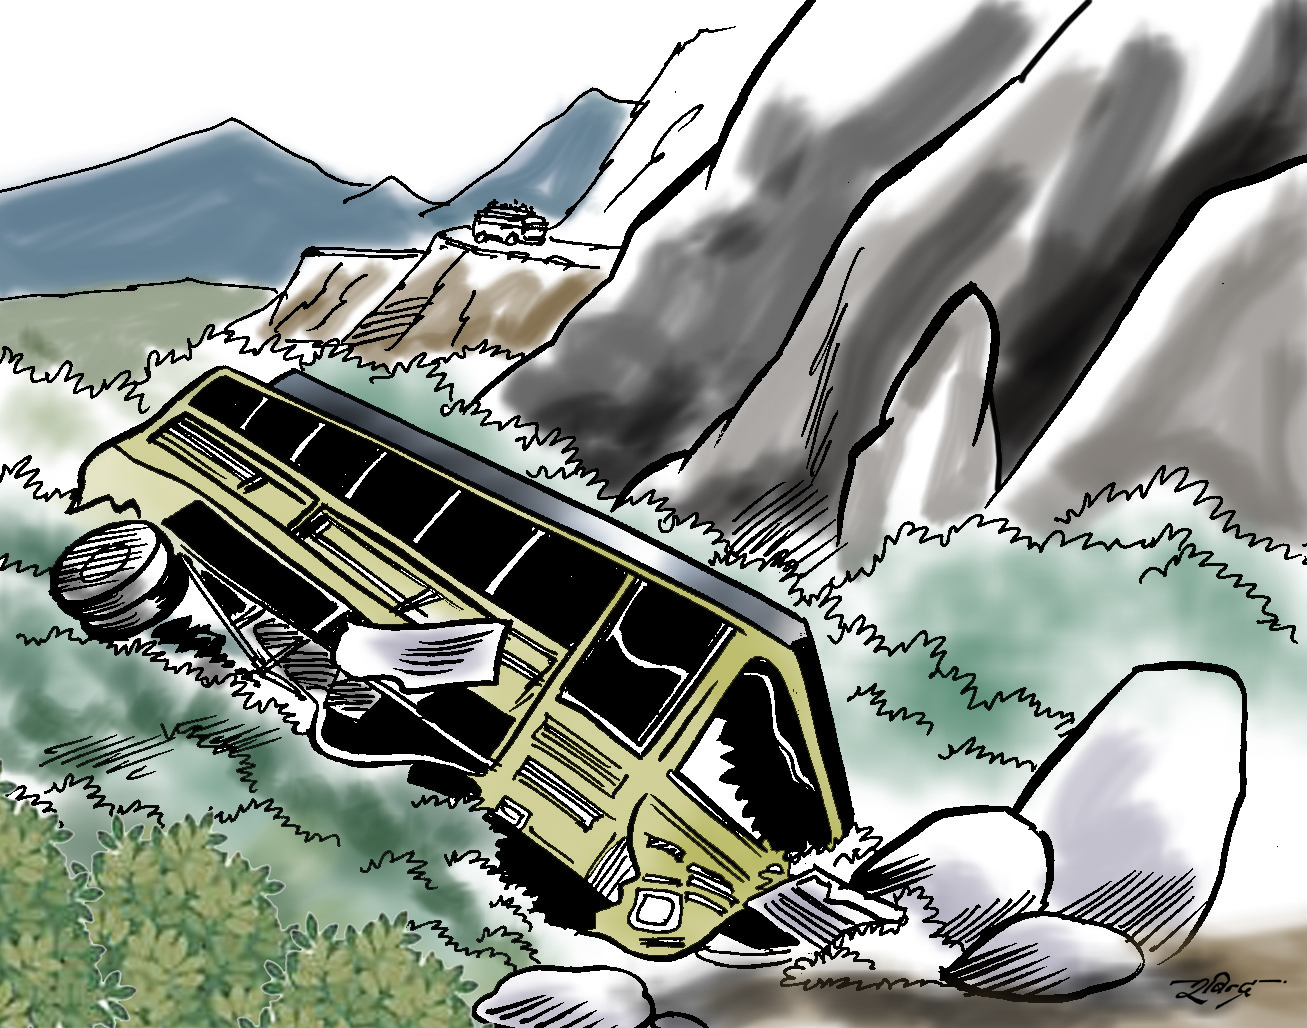 काठमाडौं आउँदै गरेको यात्रुबाहक बस त्रिशुली नदीमा खस्यो, ४ जनाको मृत्यु ३३ को जीवित उद्धार 